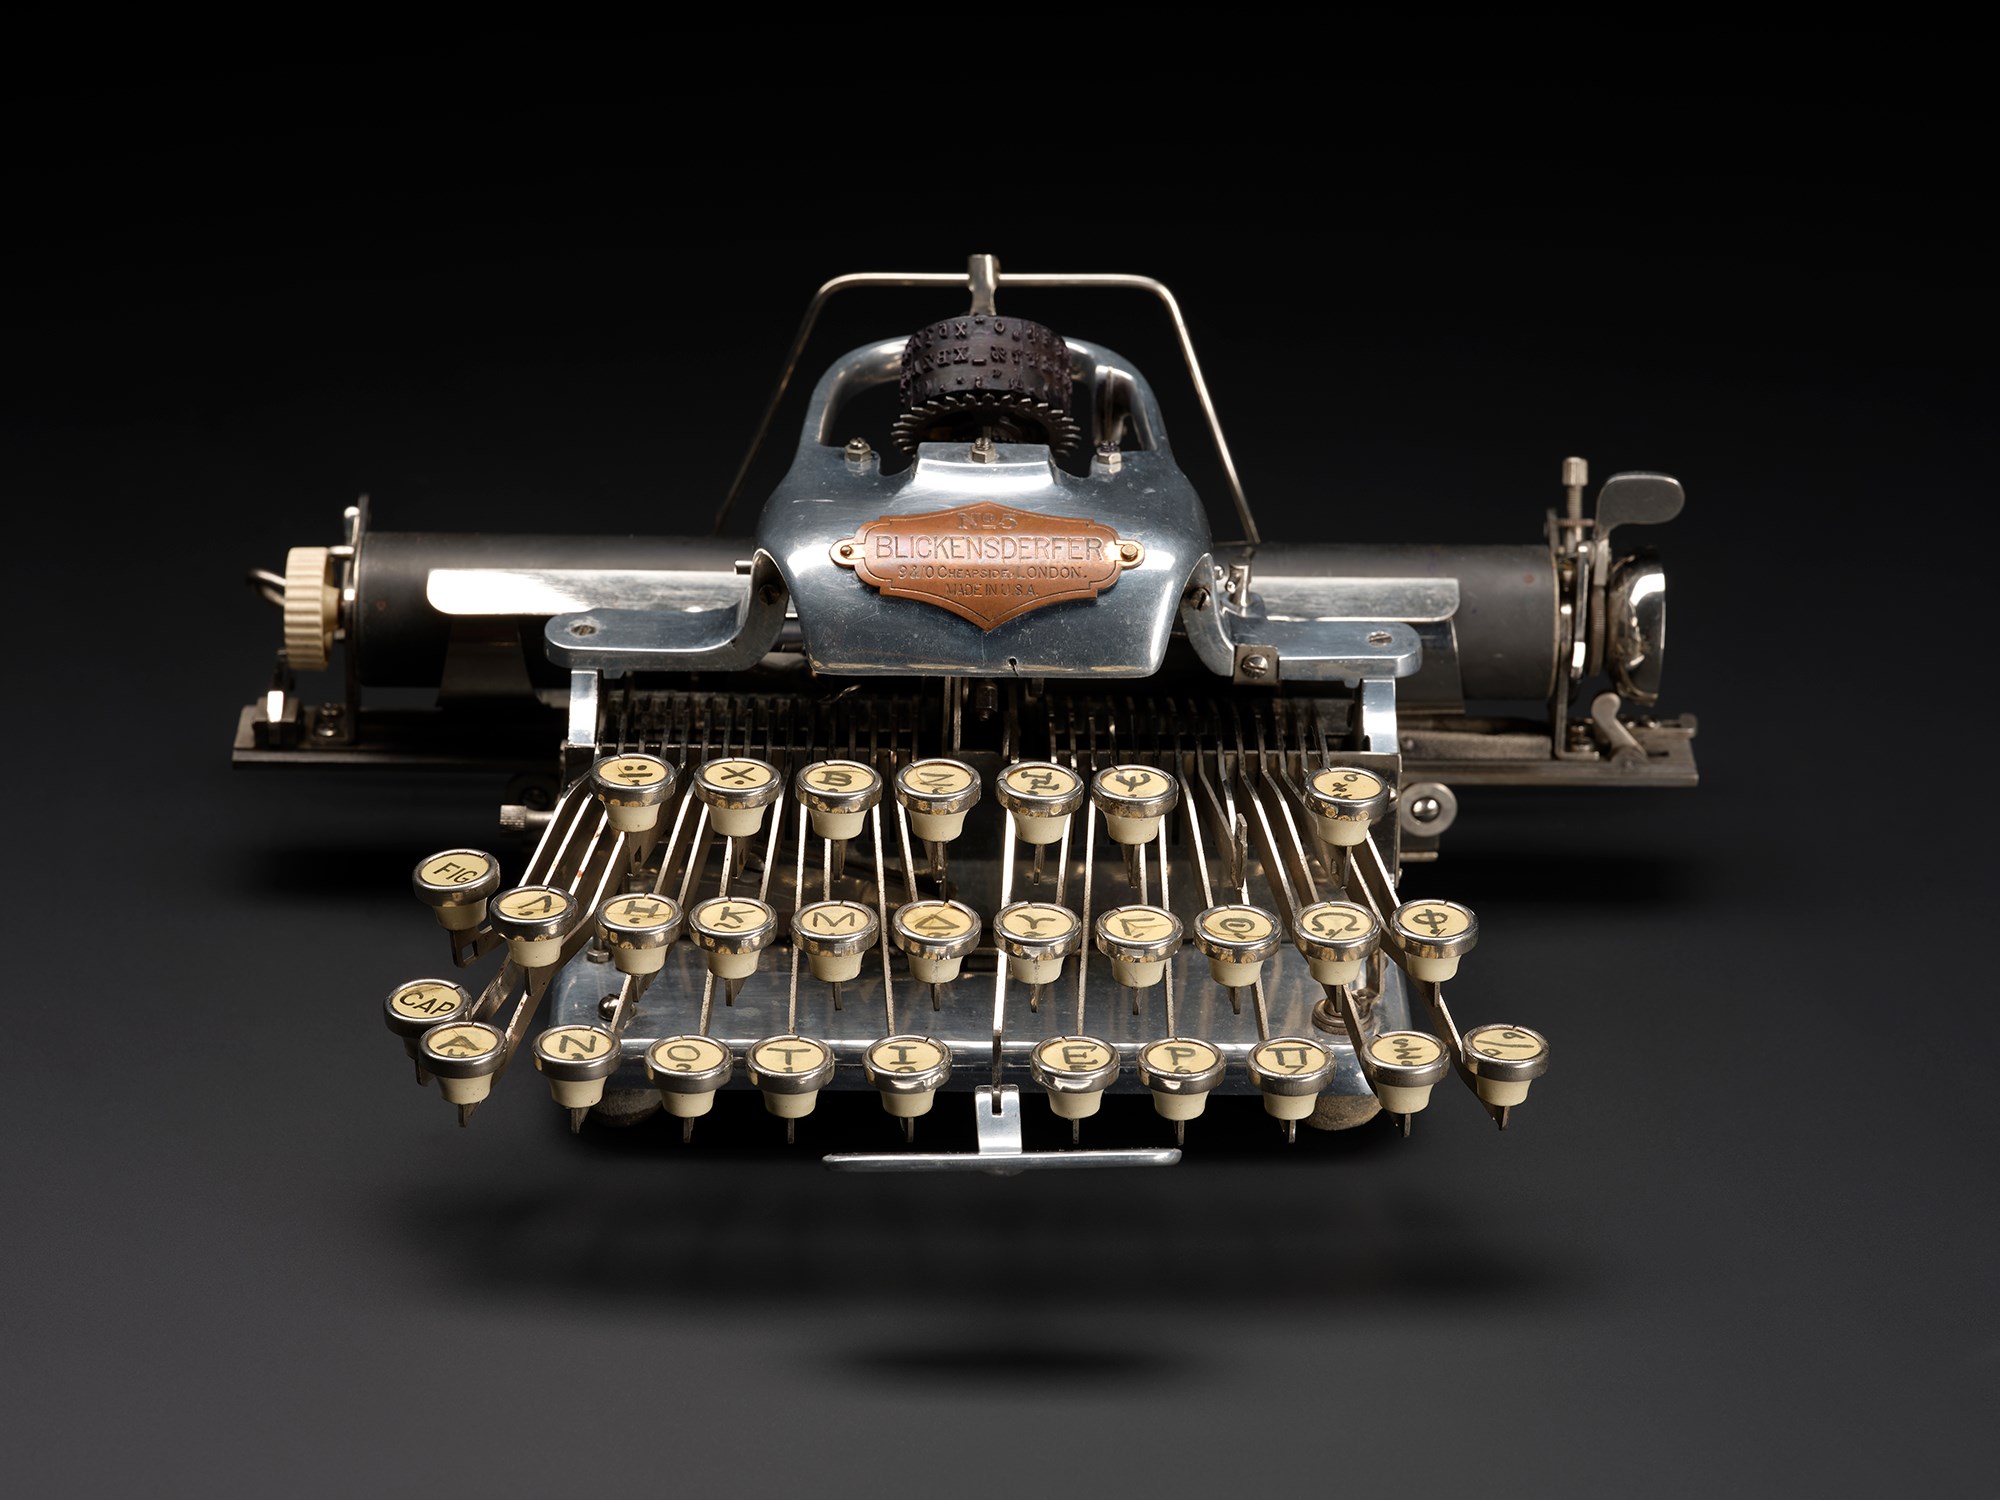 Old-fashioned typewriter.